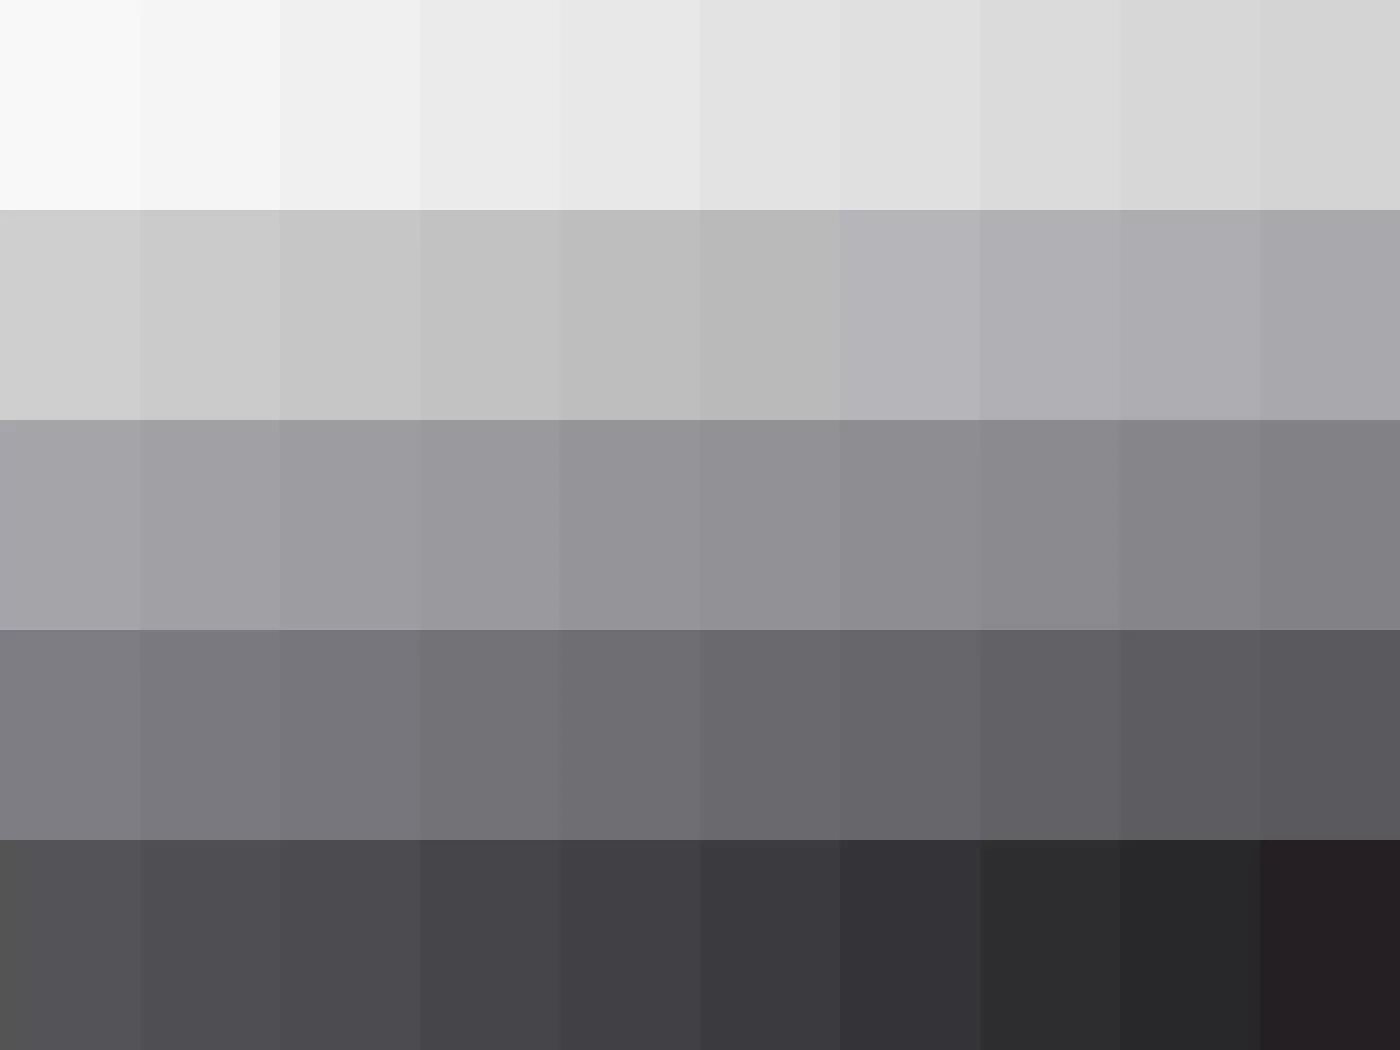 Оттенок серого вторая часть. Оттенки серого цвета. Палитра серых оттенков. Теплые оттенки серого. Универсальный серый цвет.